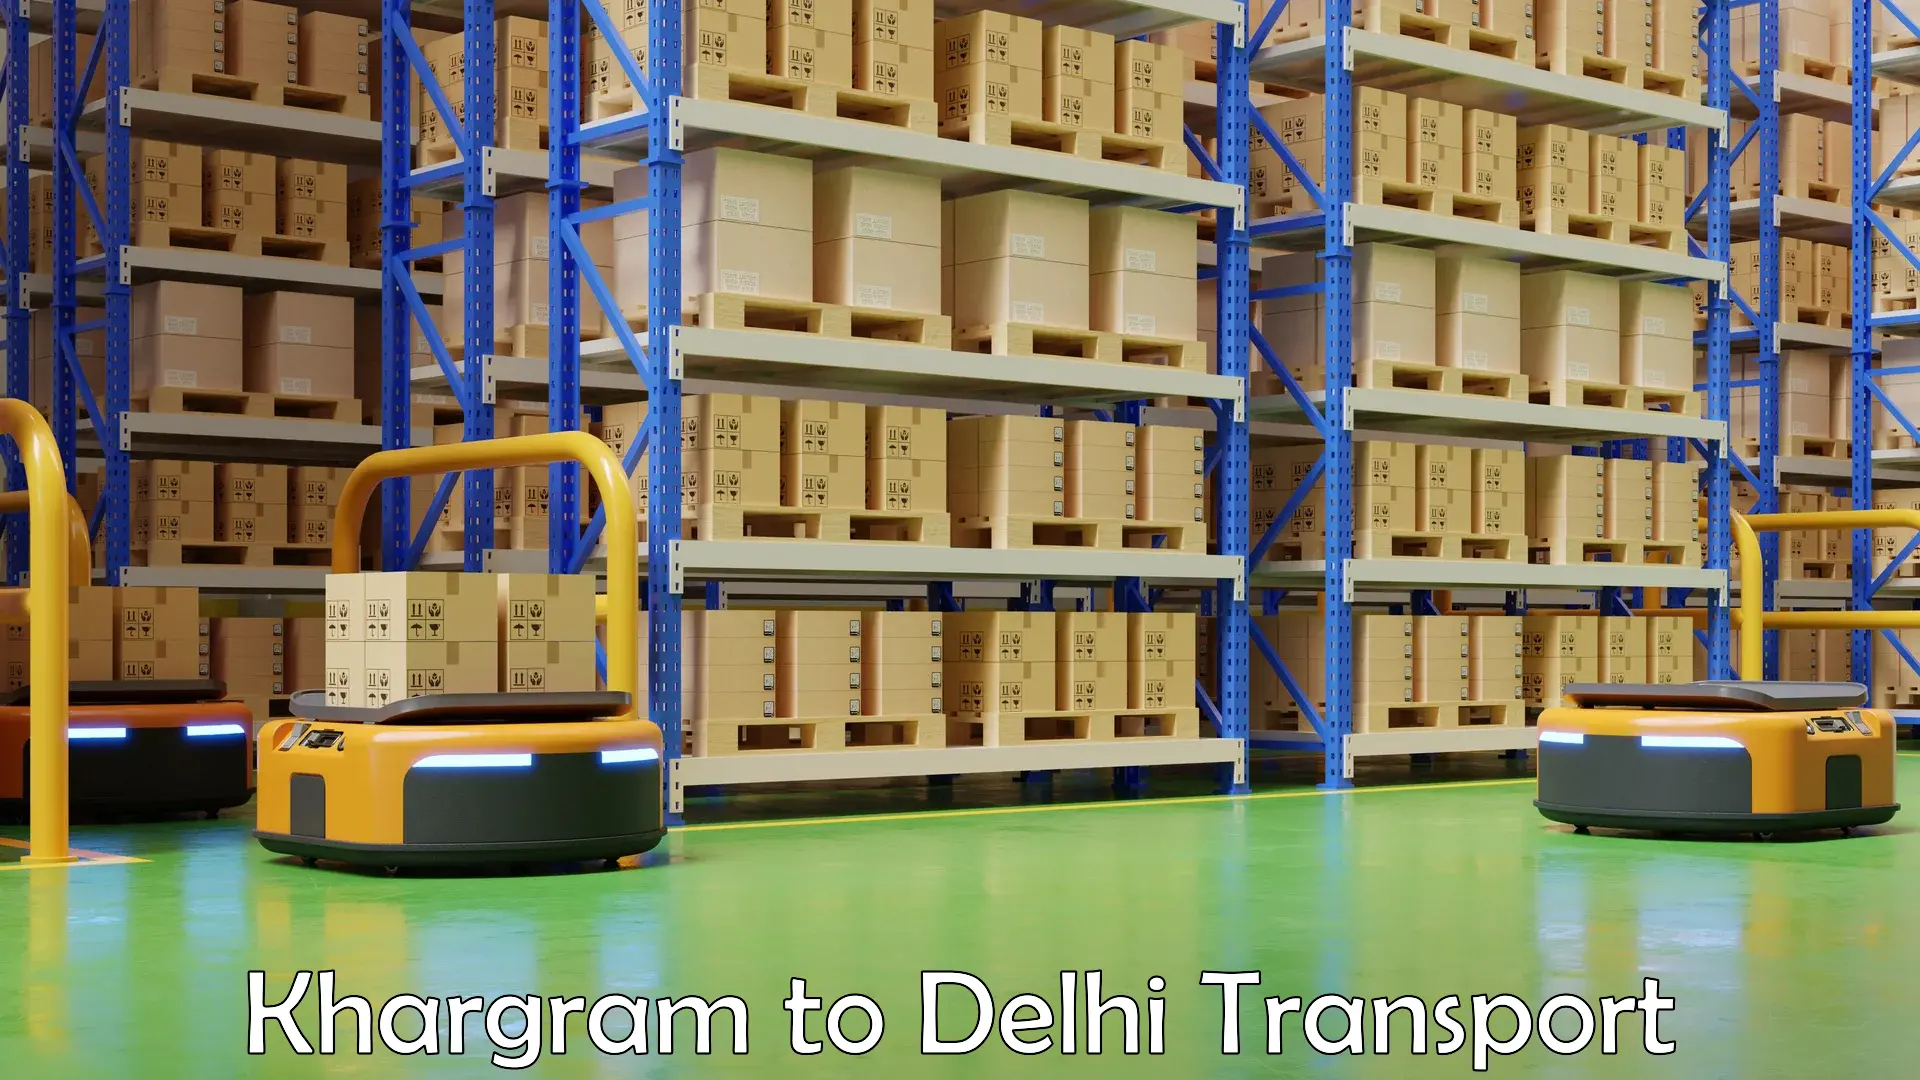 Bike shipping service Khargram to Delhi